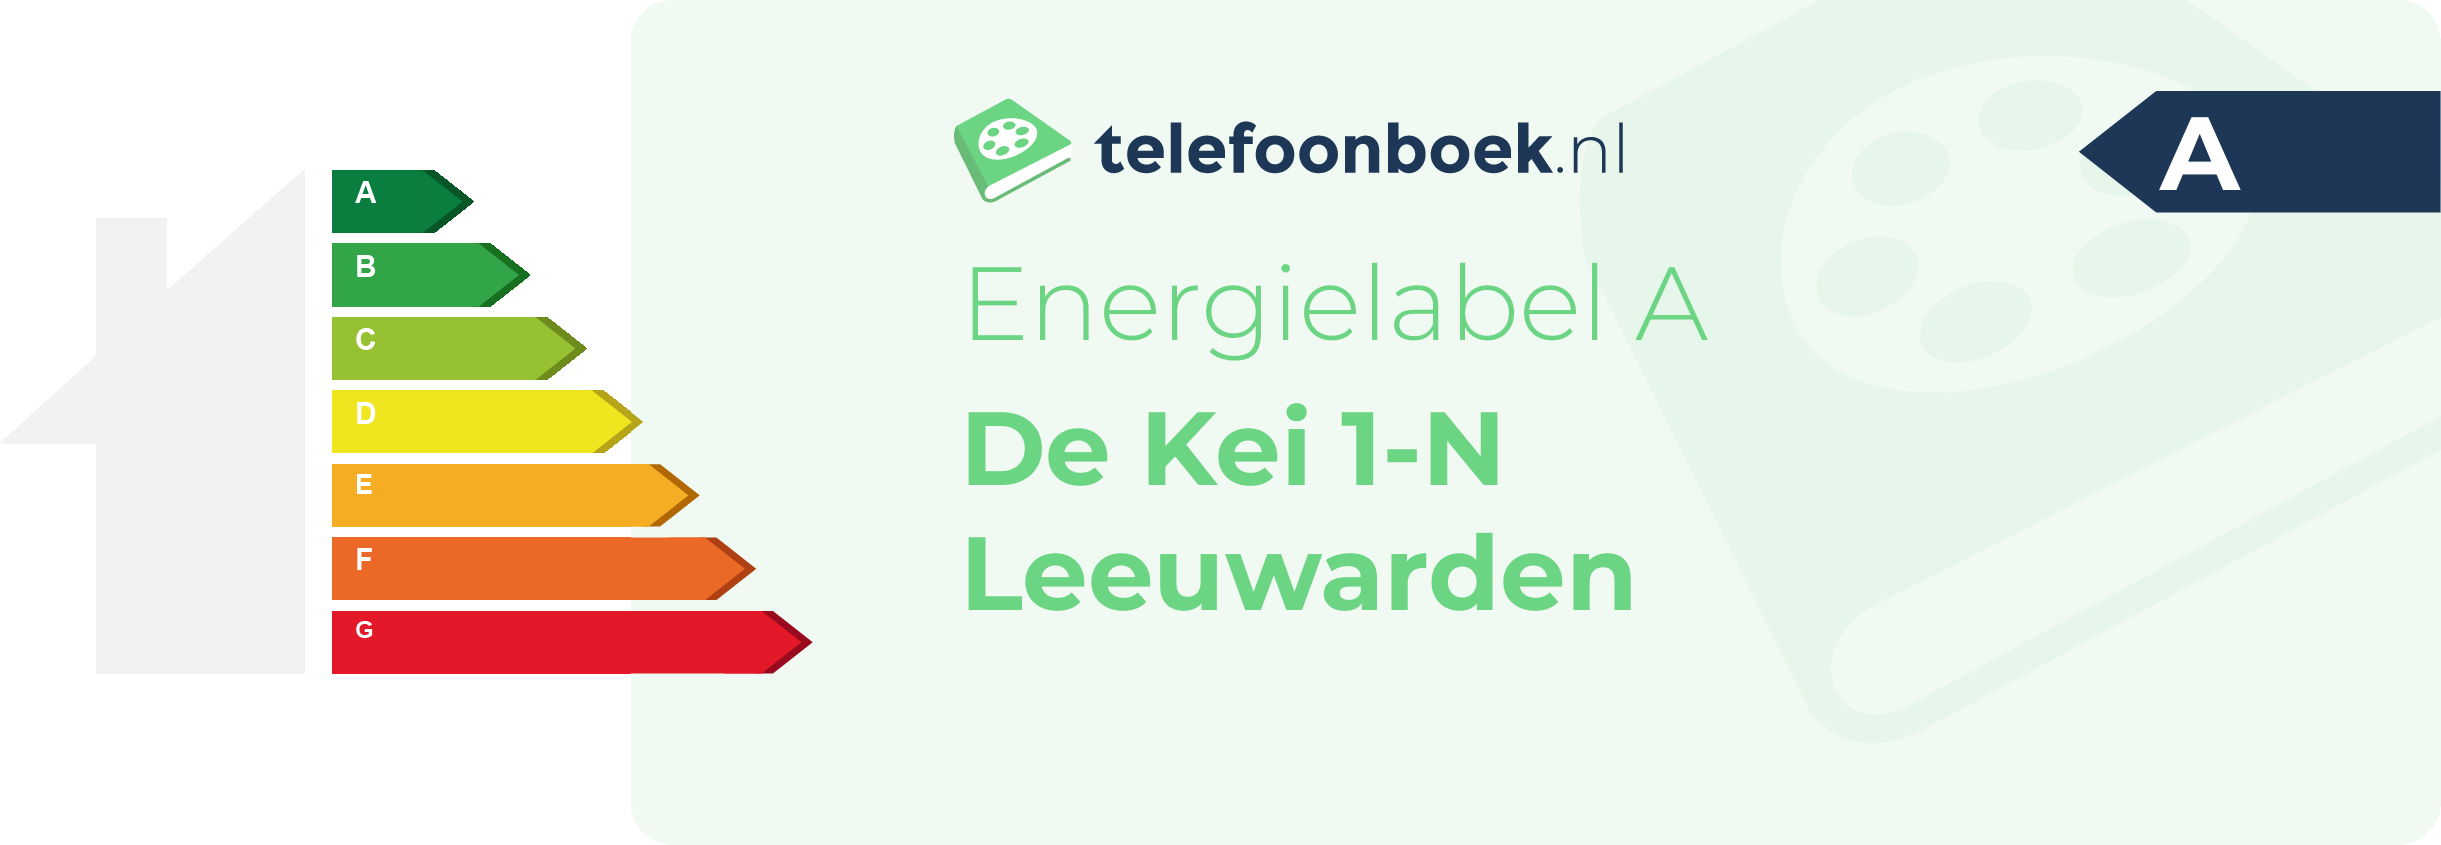 Energielabel De Kei 1-N Leeuwarden